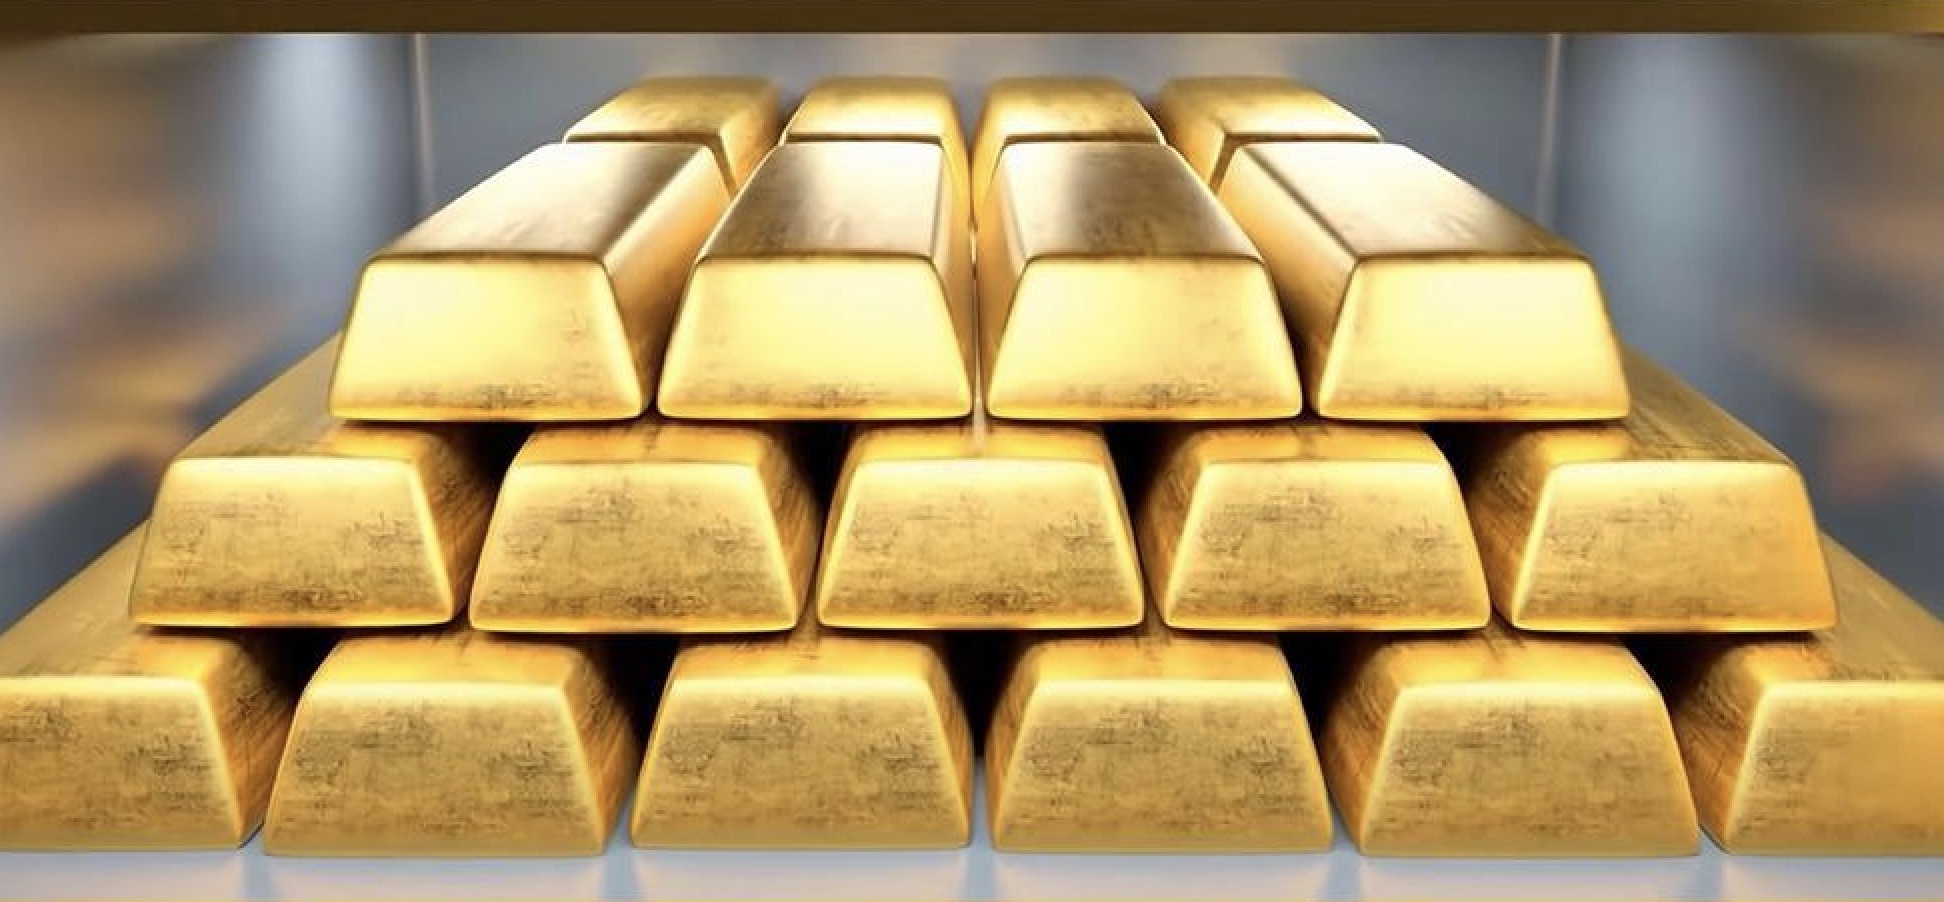 นับถอยหลังการปรับลดอัตราดอกเบี้ยของธนาคารกลางสหรัฐ ผู้เชี่ยวชาญคาดการณ์ว่าทองคำจะฟื้นตัว เตือนนักลงทุนให้ติดตามแนวโน้ม